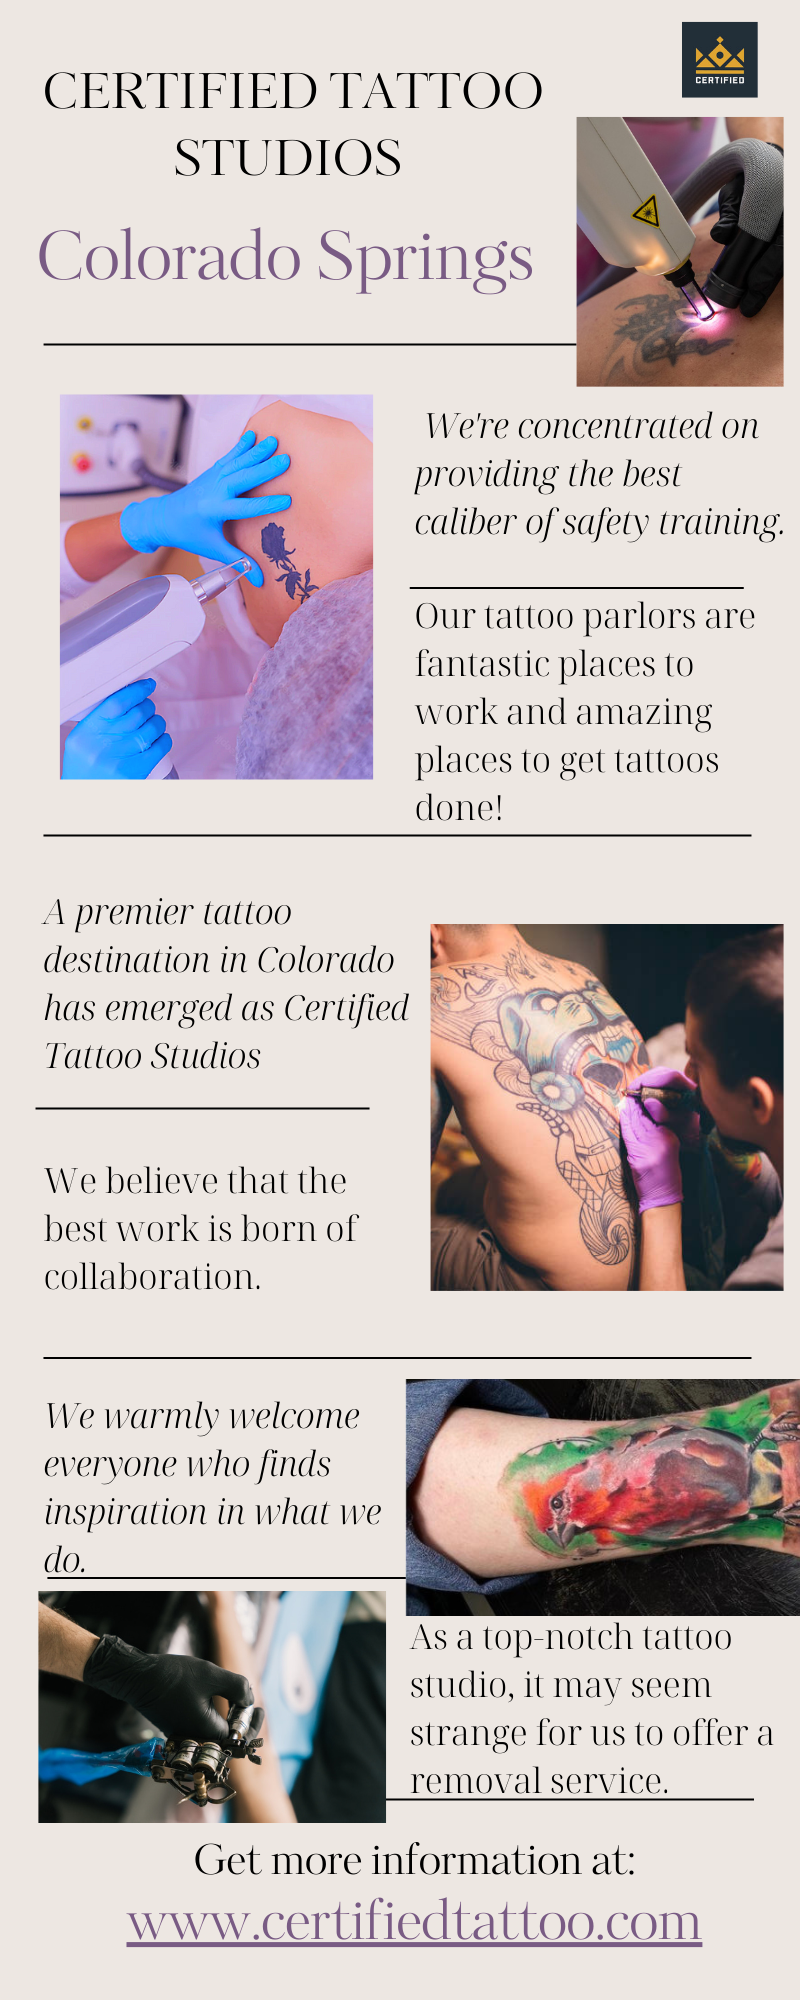 Certified Tattoo on Gab: 'Best Certified Tattoo Studios in Colorado Springs…' - Gab Social